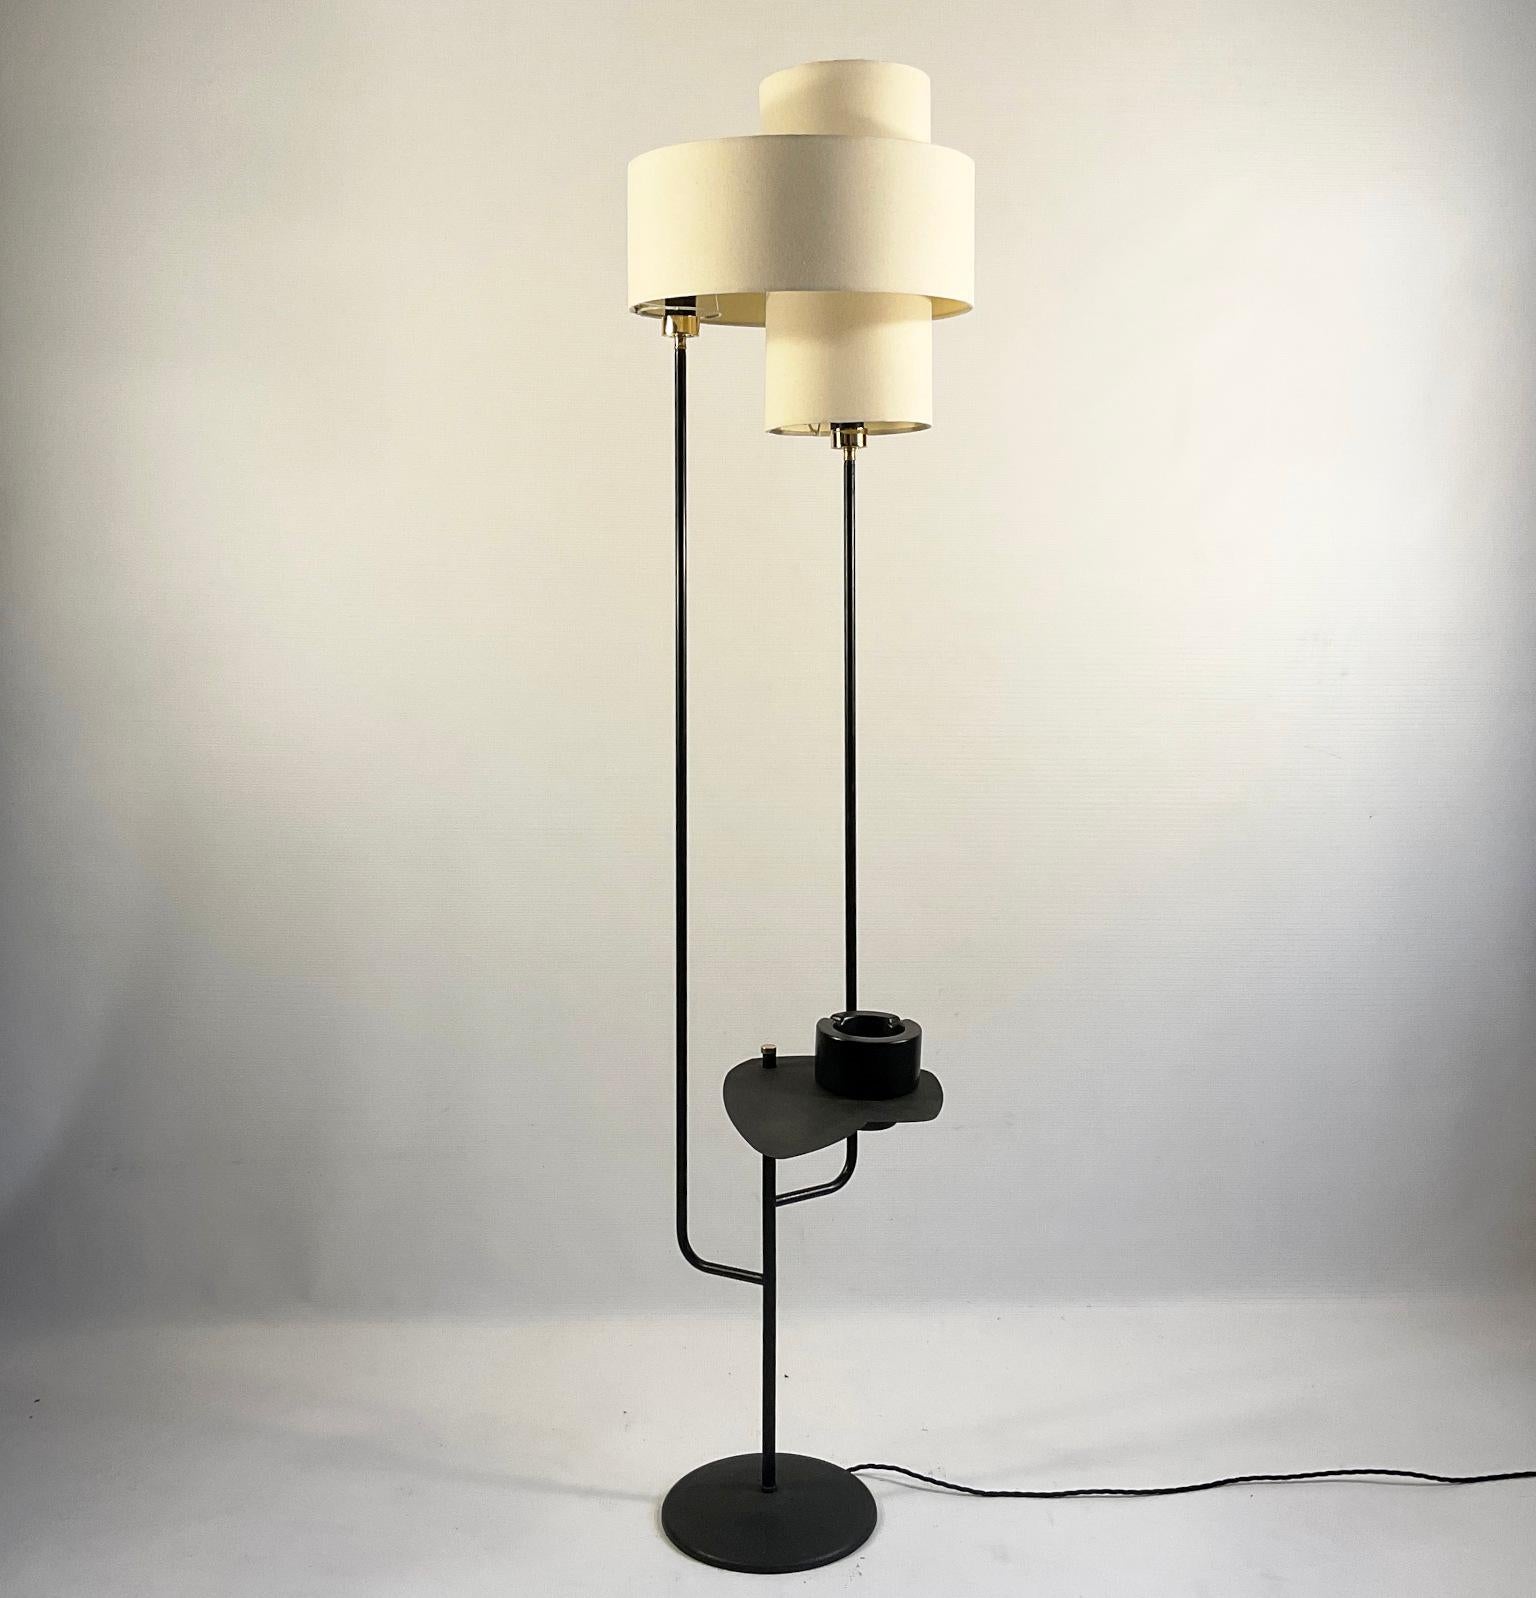 Französische Stehlampe aus den 1950er Jahren mit zwei Schirmen, die jeweils mit einem eigenen Schalter eingeschaltet werden können. Zur Stehleuchte gehört ein Beistelltisch, der nach Belieben verstellt oder entfernt werden kann.
Eine schwarz